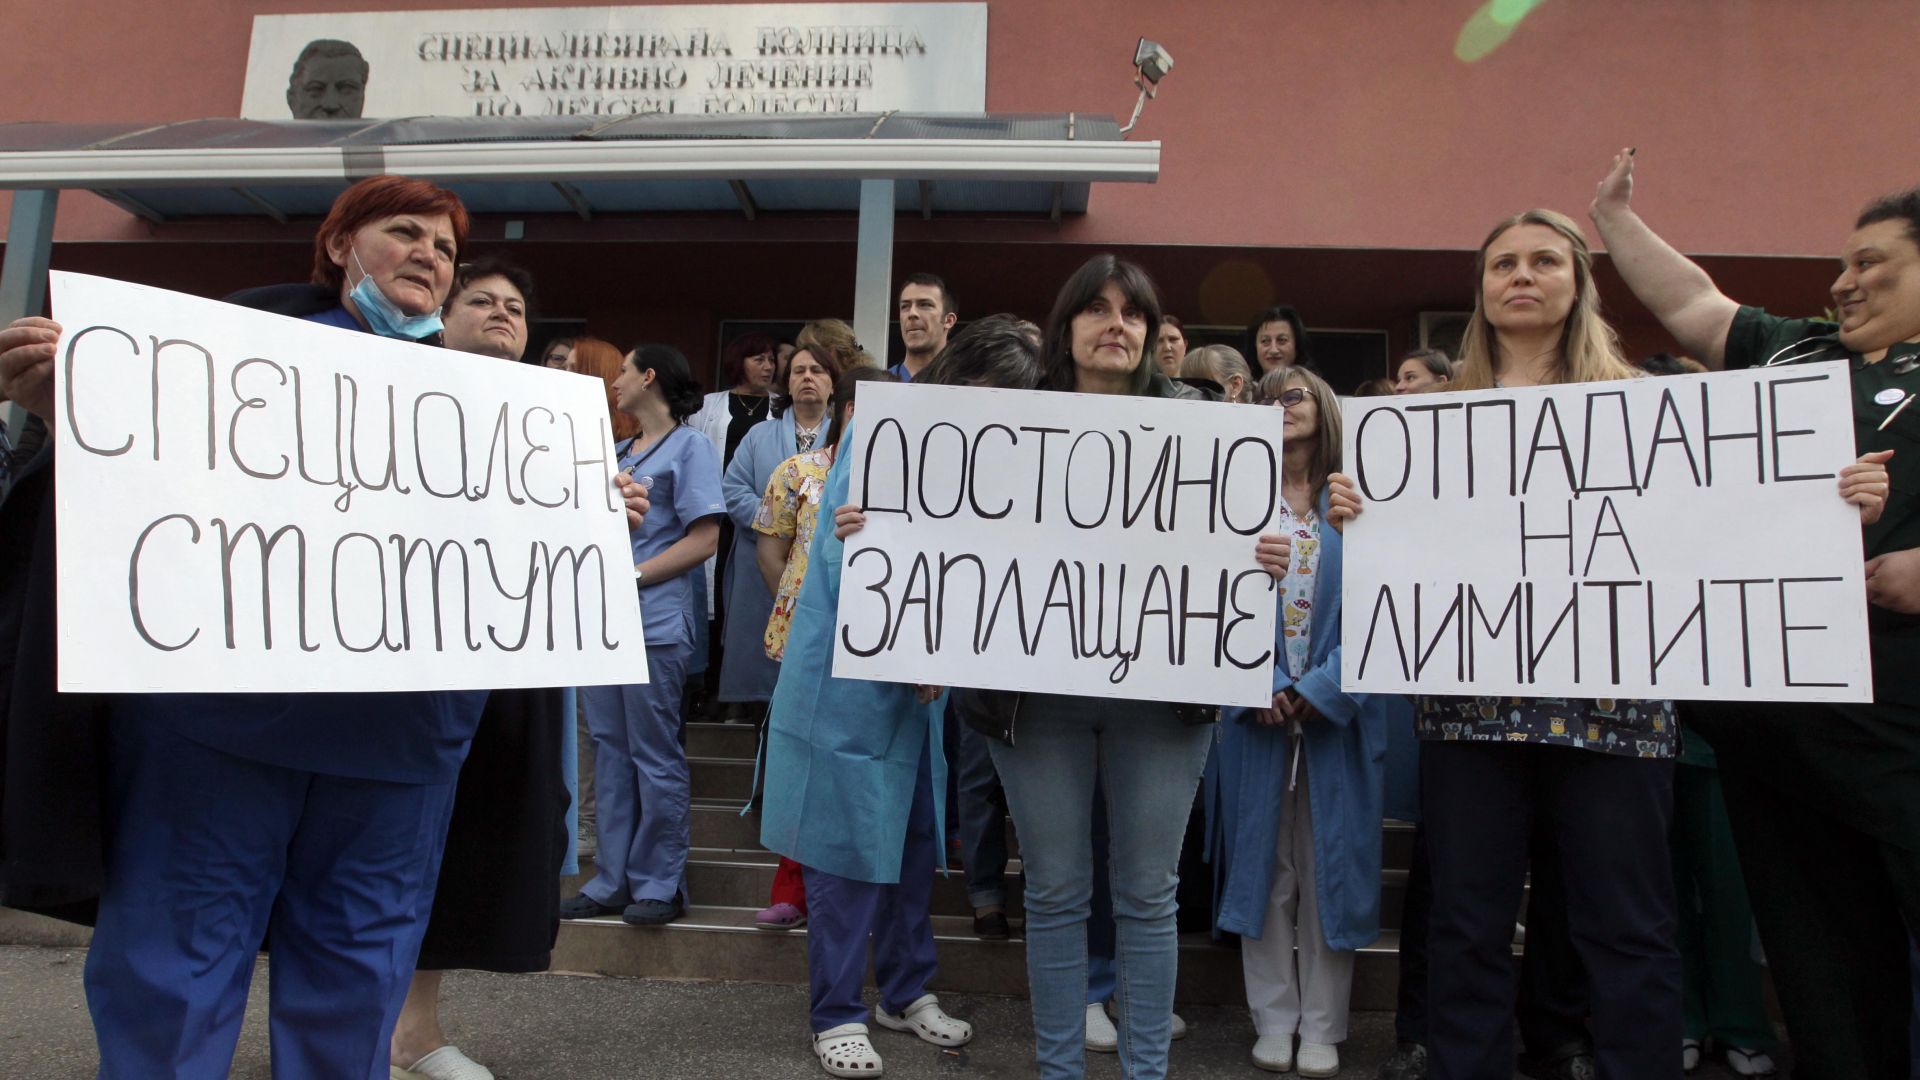  Протестиращи медици блокираха бул. "Иван Гешов" в София